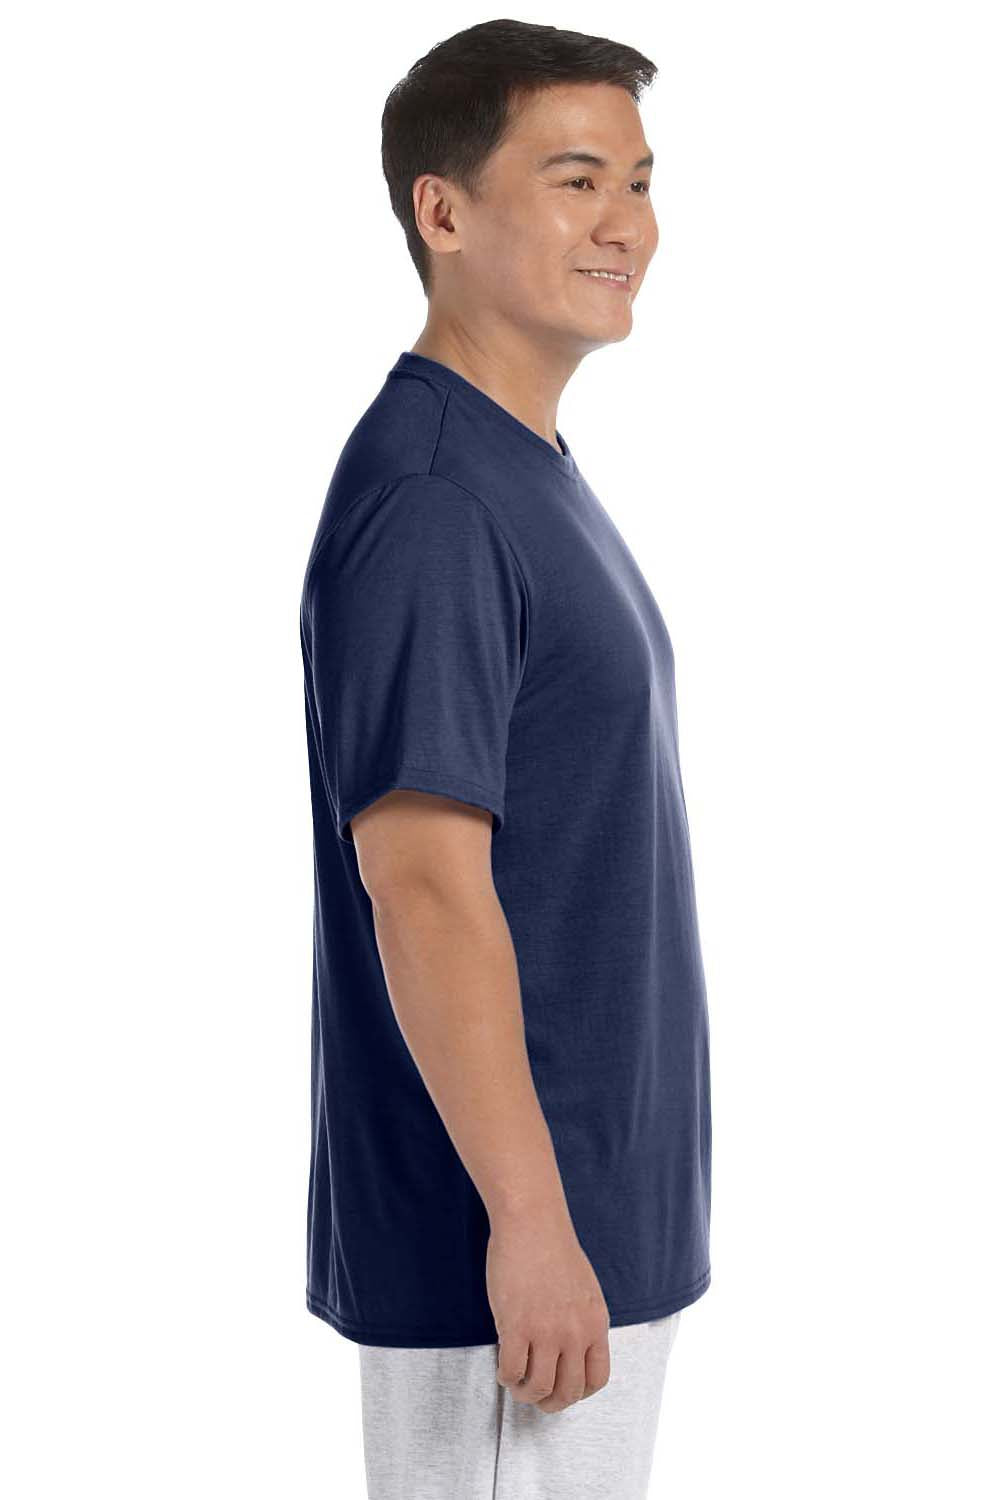 Gildan G420 Mens Performance Jersey Moisture Wicking Short Sleeve Crewneck T-Shirt Navy Blue Side